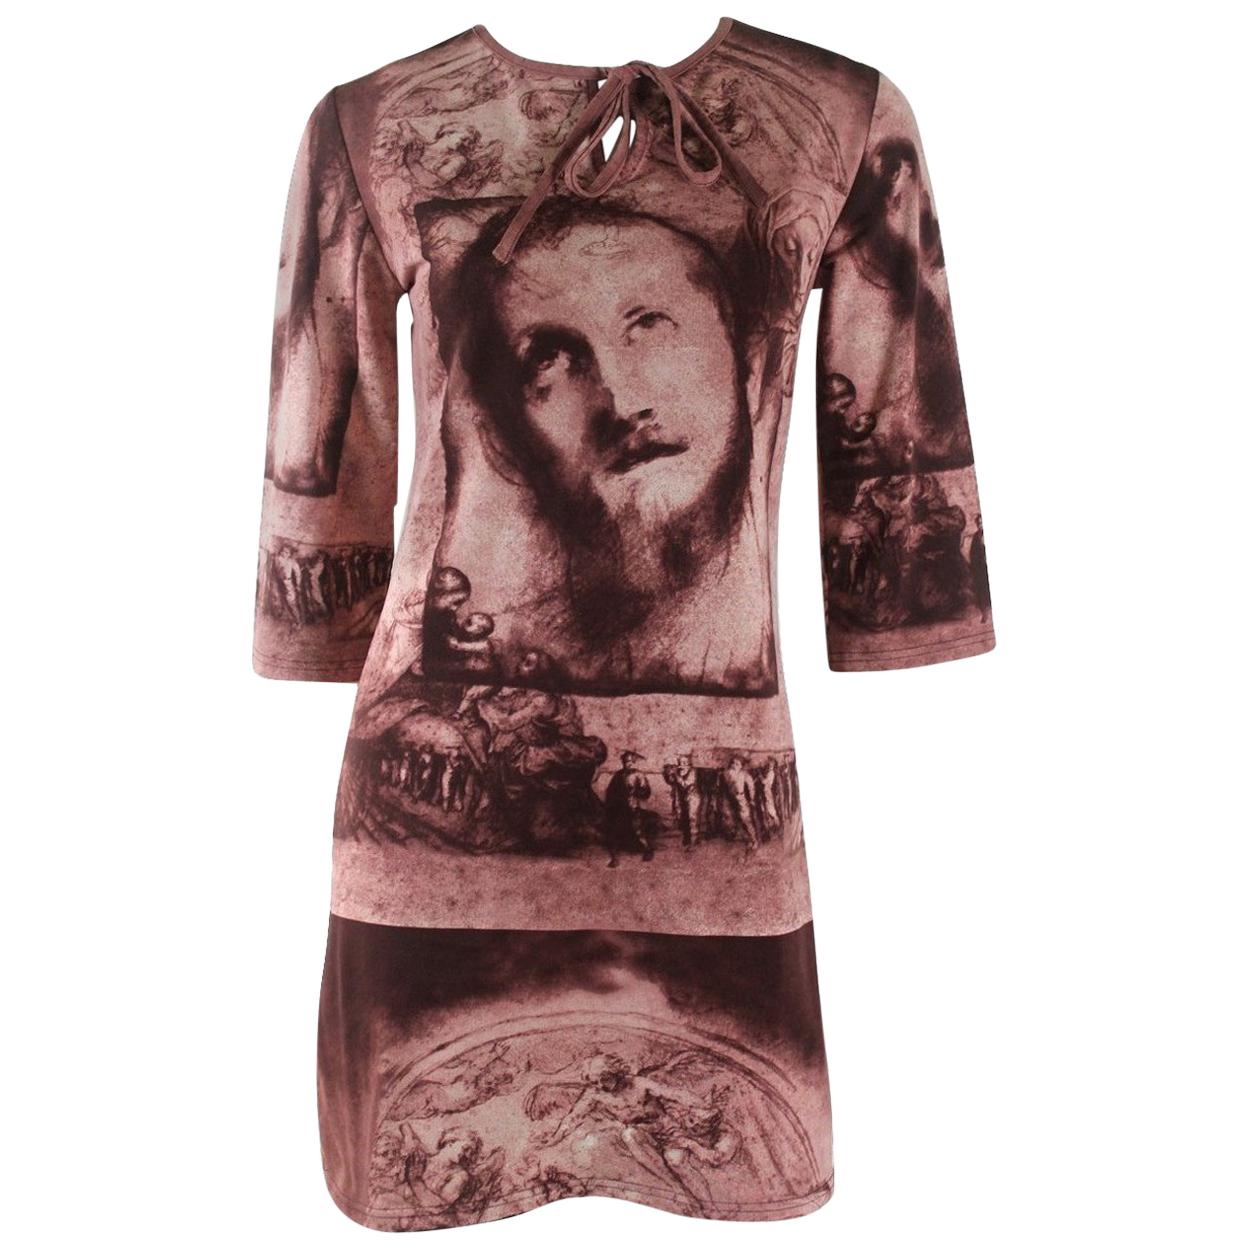 Jean Paul Gaultier Classique Label Collection 'Jesus' Dress For Sale